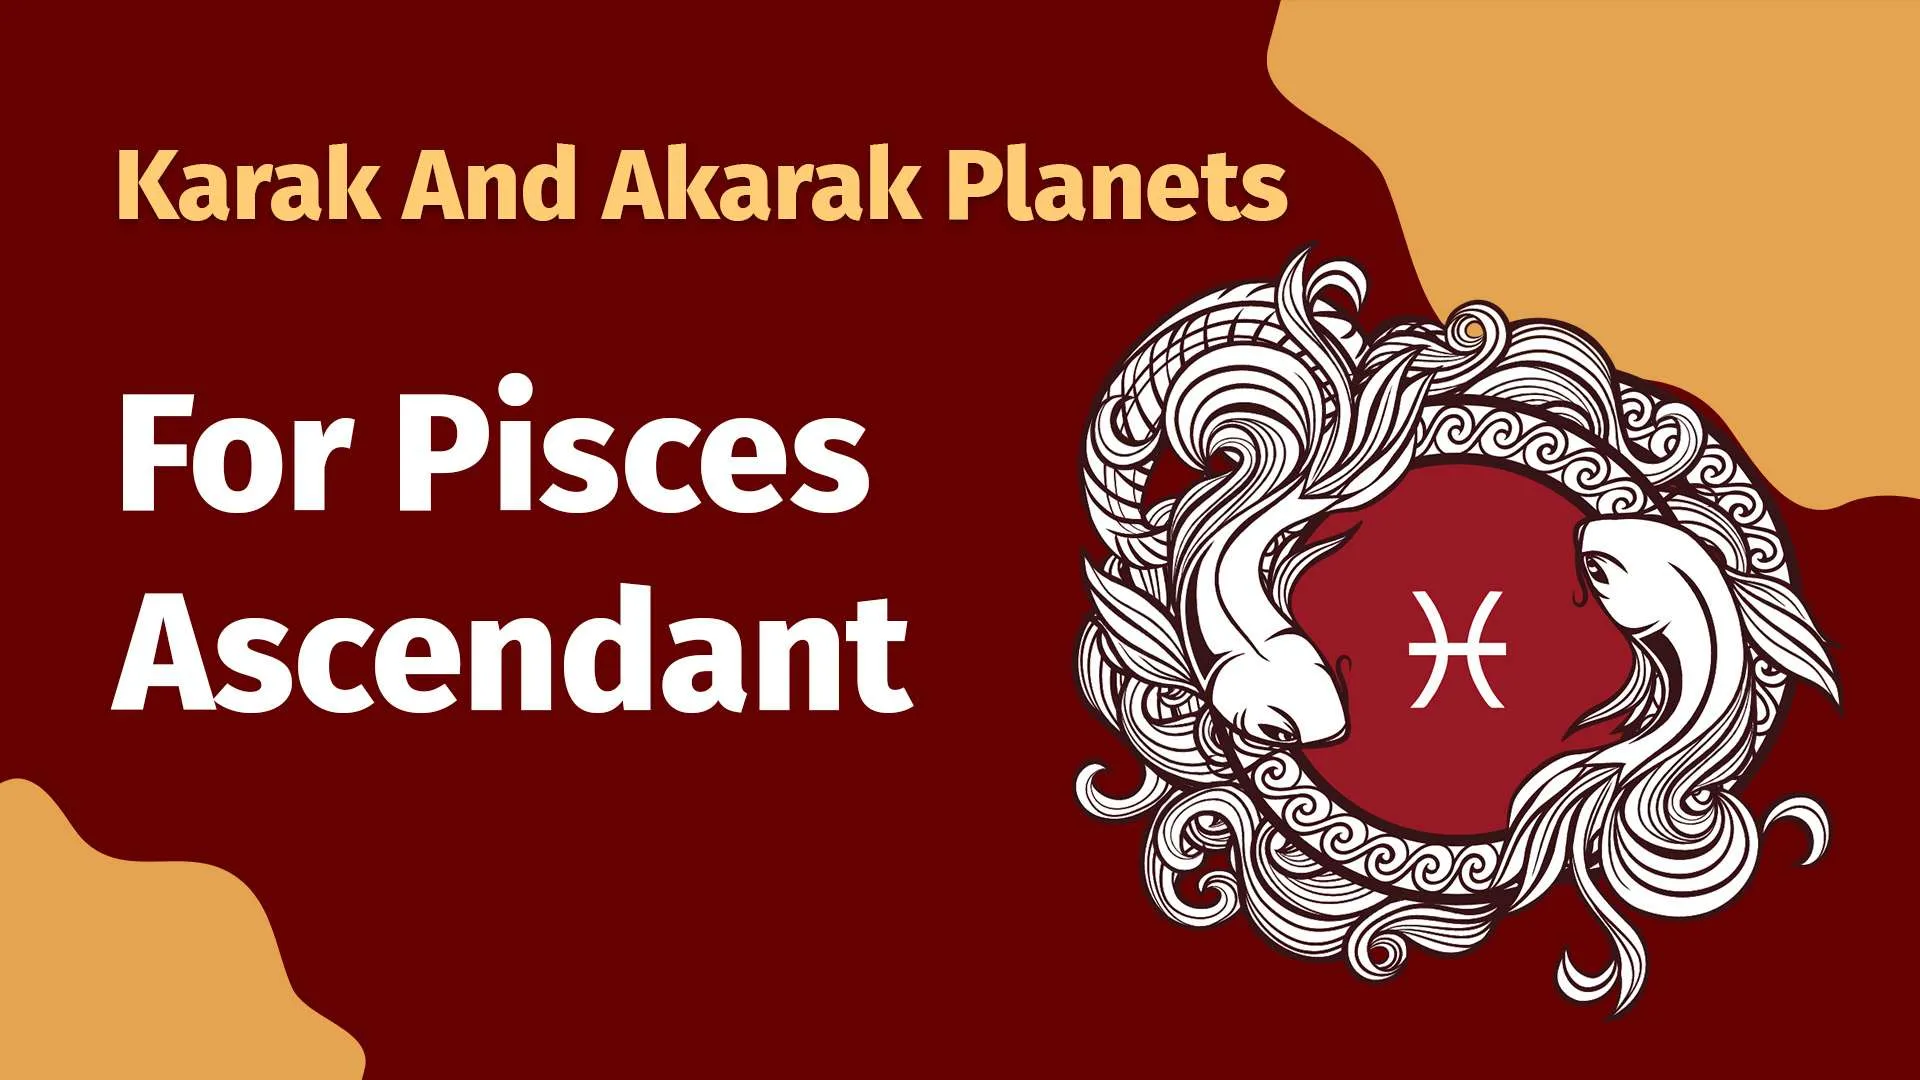 Karak and Akarak Planets for Pisces Ascendant